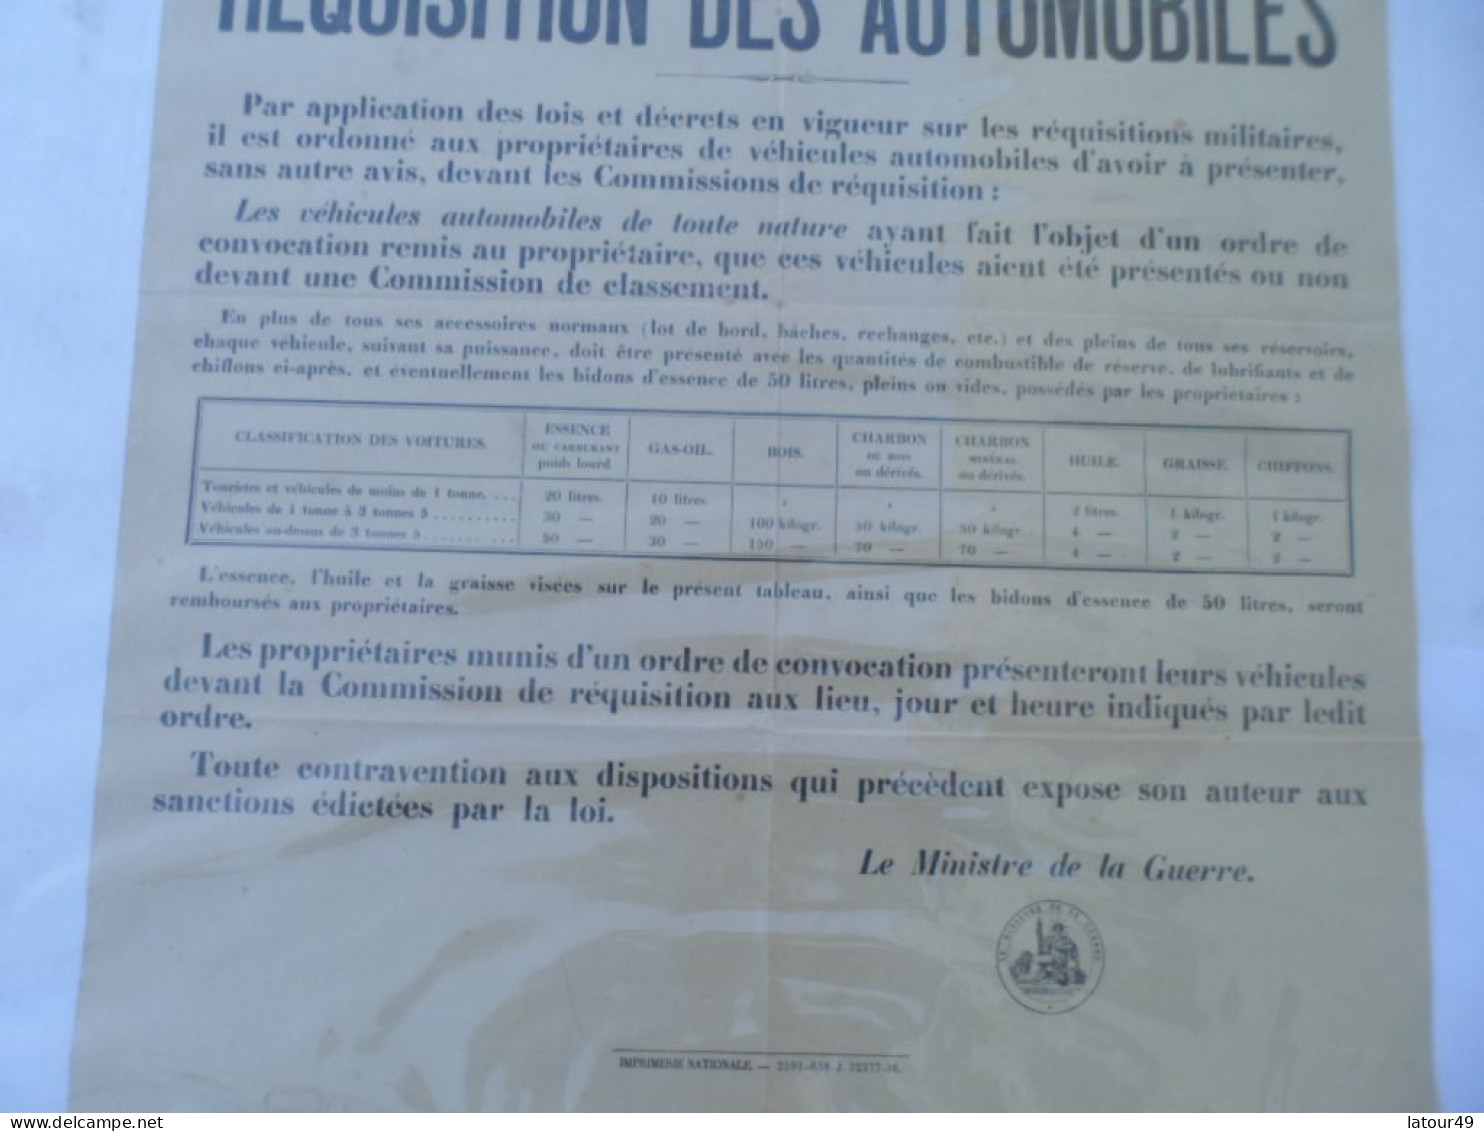 Affiche  Requisition  Des Automobiles Commune De Tournissan - 1914-18